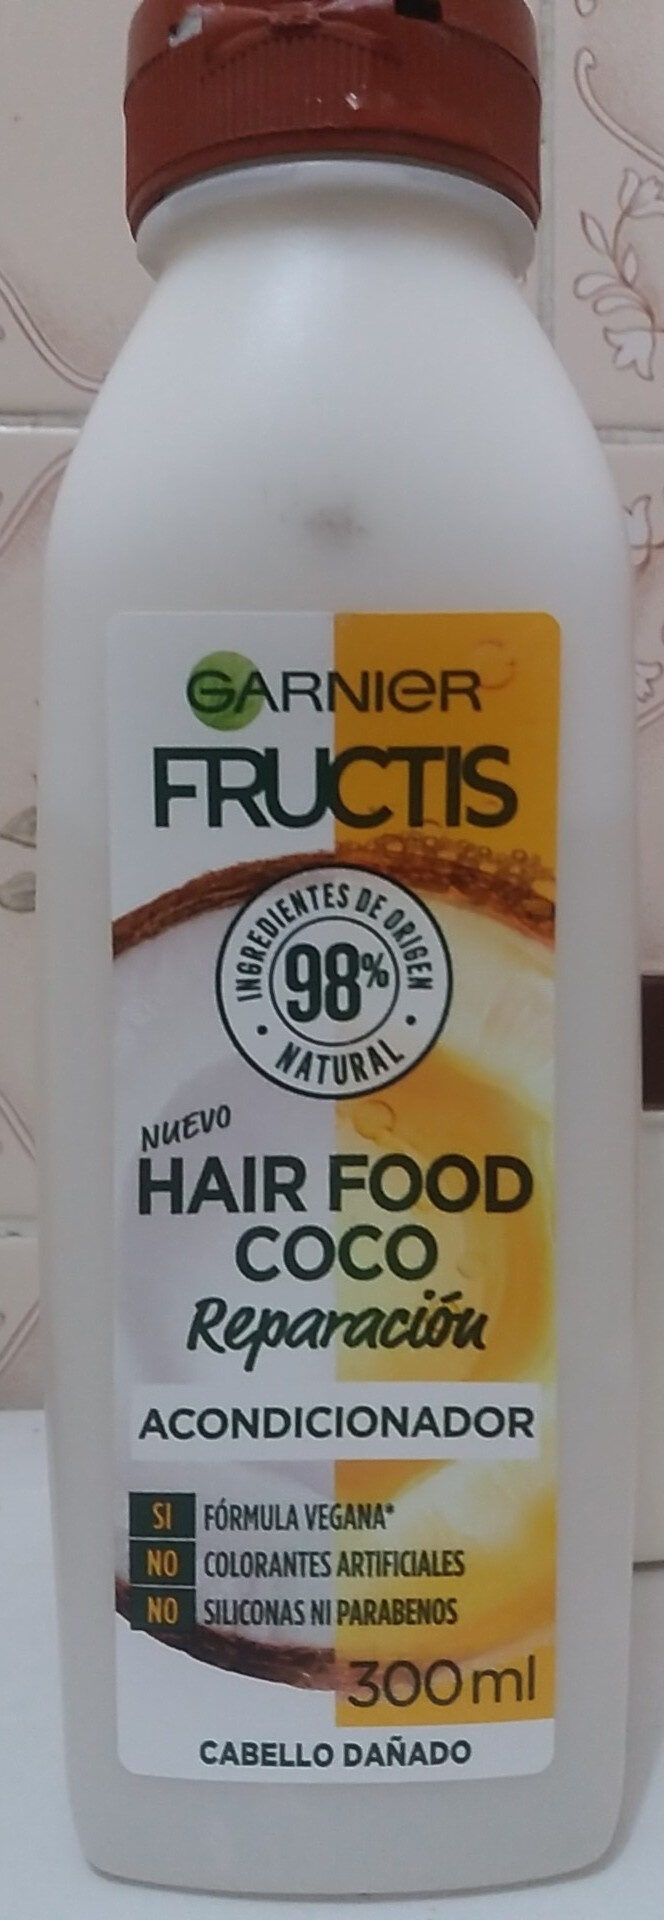 Hair Food Coco Acondicionador - Produit - es